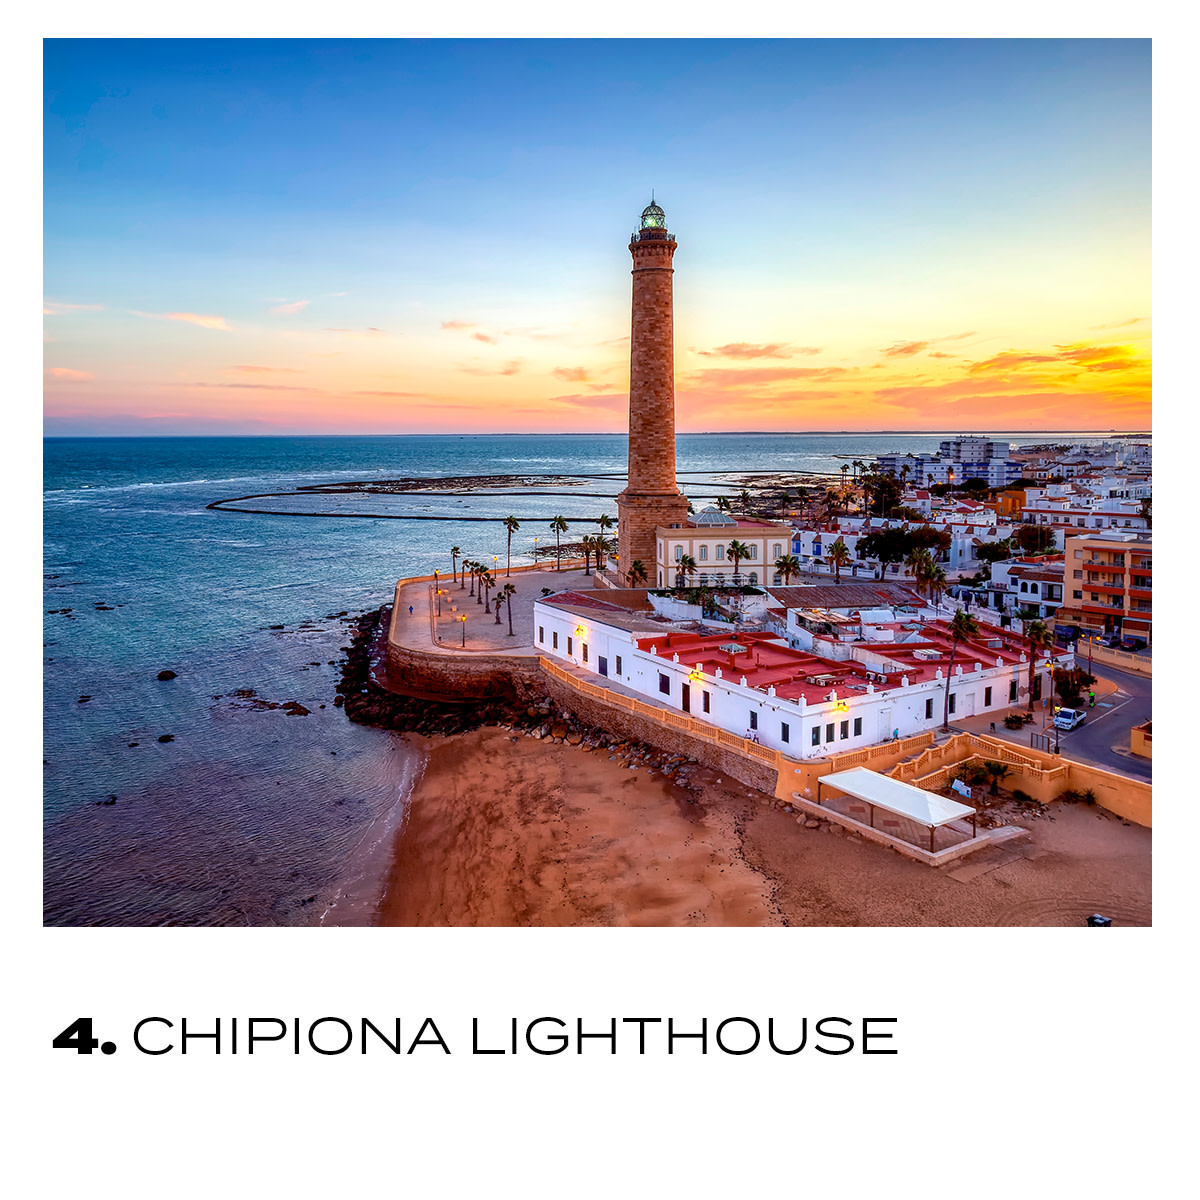 Hier is onze route! ⬇️ Je zult genieten v/h uitzicht op de zee... ❤️

▶️ The #CabodeGataLighthouse...

▶️ The #TorroxLighthouse...

▶️ The #TrafalgarLighthouse...

▶️ And the #ChipionaLighthouse! 🤗 

👉 bit.ly/3rzIrgP

#VisitSpain #SpainRoutes @viveandalucia